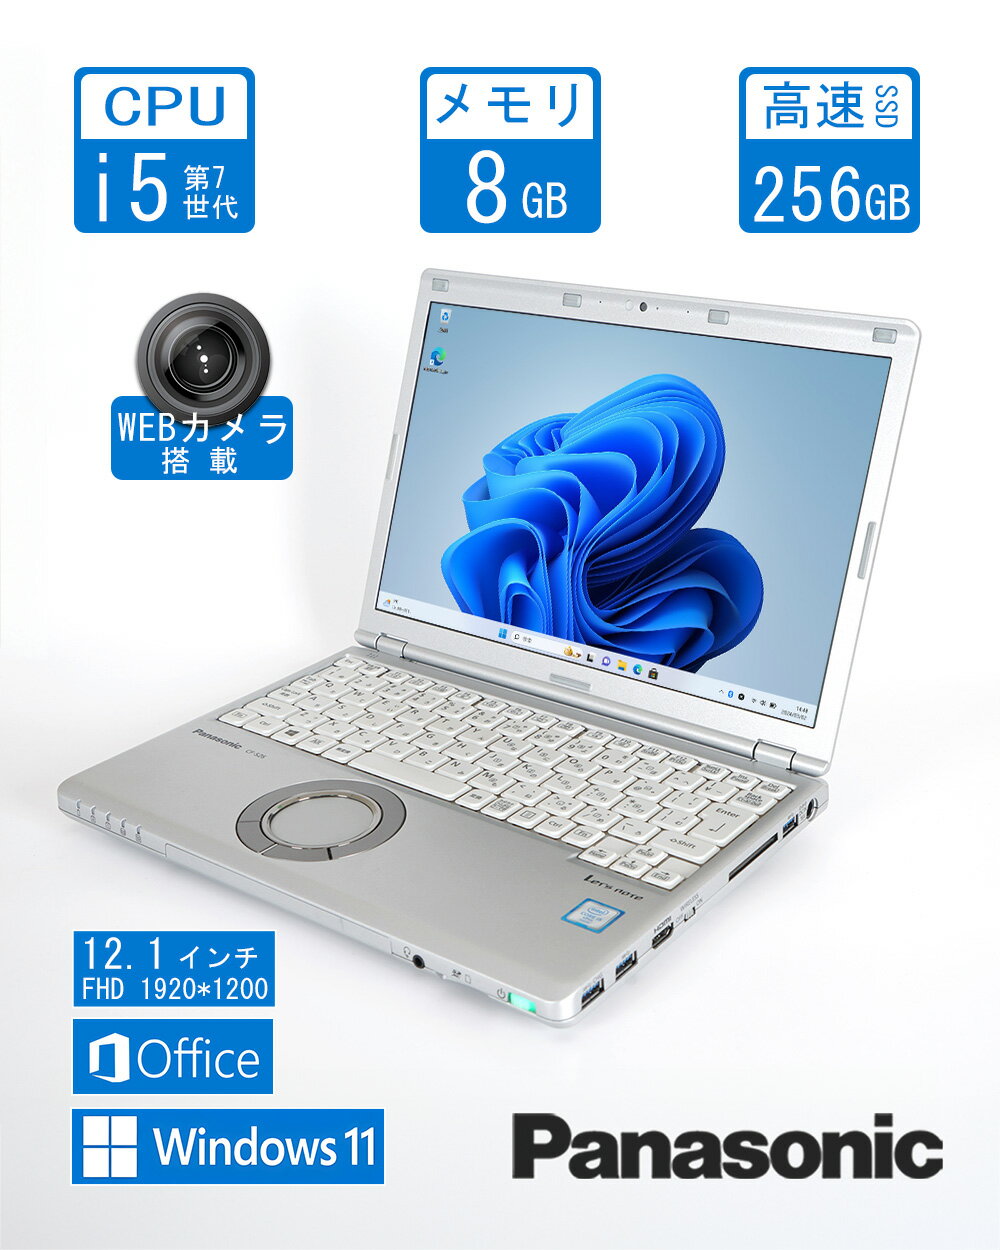 パナソニック 軽量ノートPC Let s Note CF-SZ6/ Office / Win11/12.1型フルHD/Core i5-第7世代/ Webカメラ/ HDMI/WIFI/ メモリ:8GB/ SSD:256GB/ おまけ選択可能 中古パソコン 【G_8_SZ6】